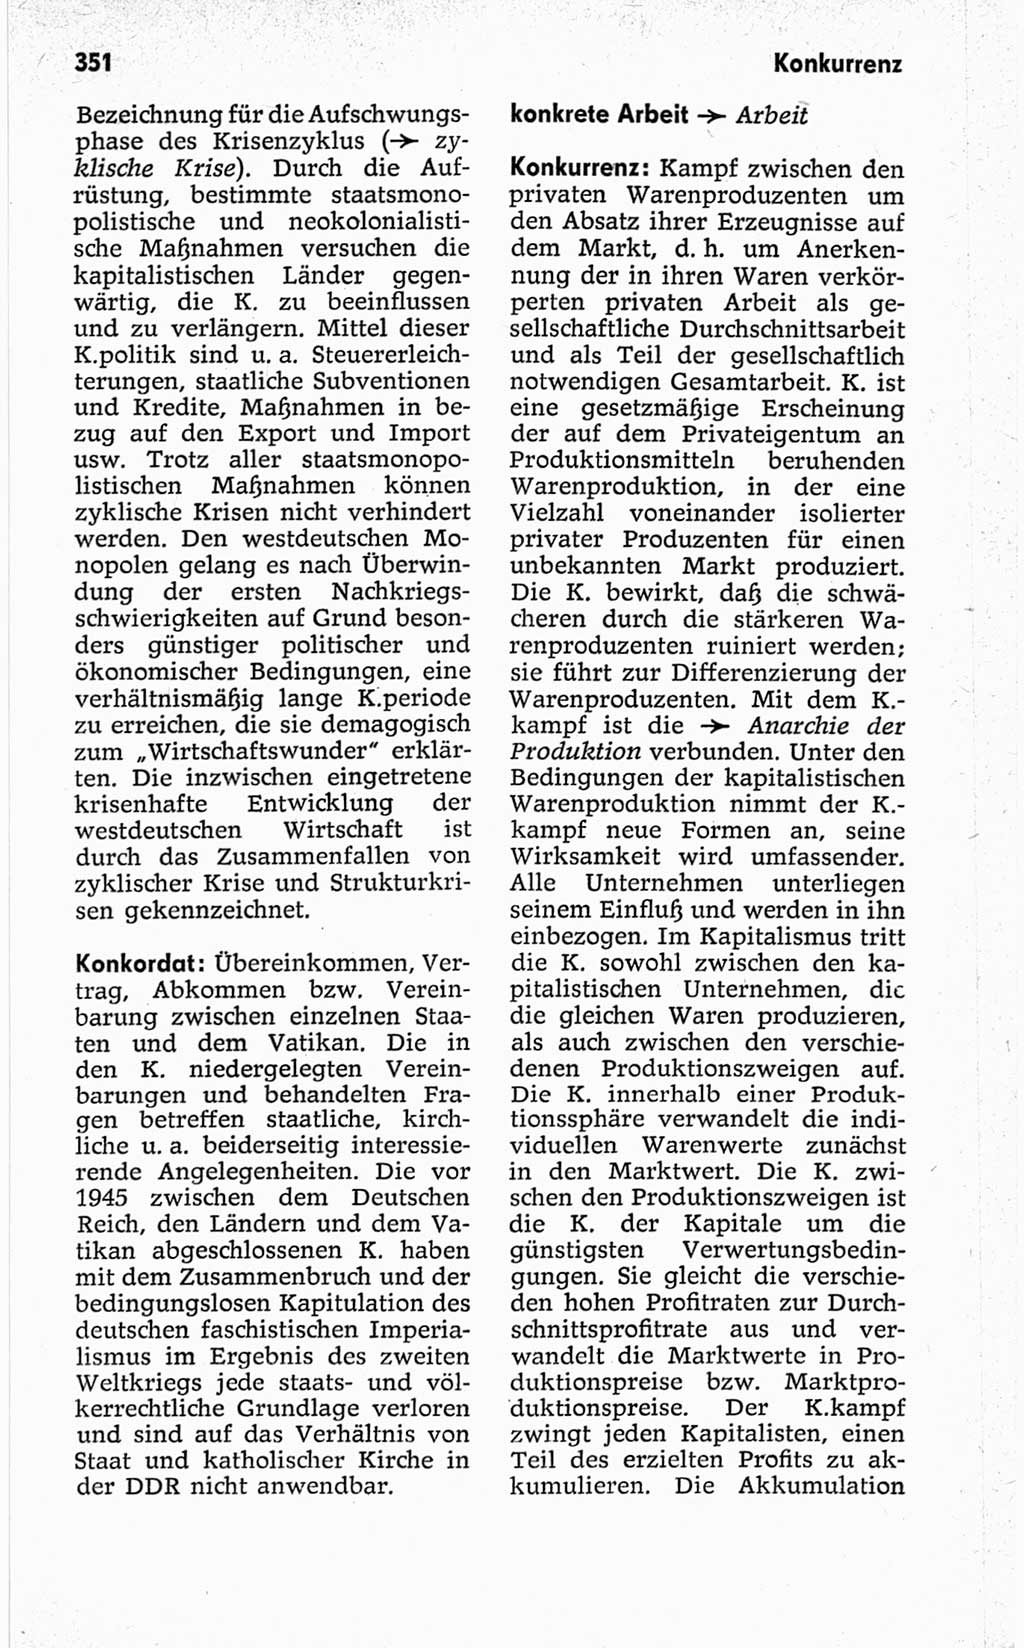 Kleines politisches Wörterbuch [Deutsche Demokratische Republik (DDR)] 1967, Seite 351 (Kl. pol. Wb. DDR 1967, S. 351)